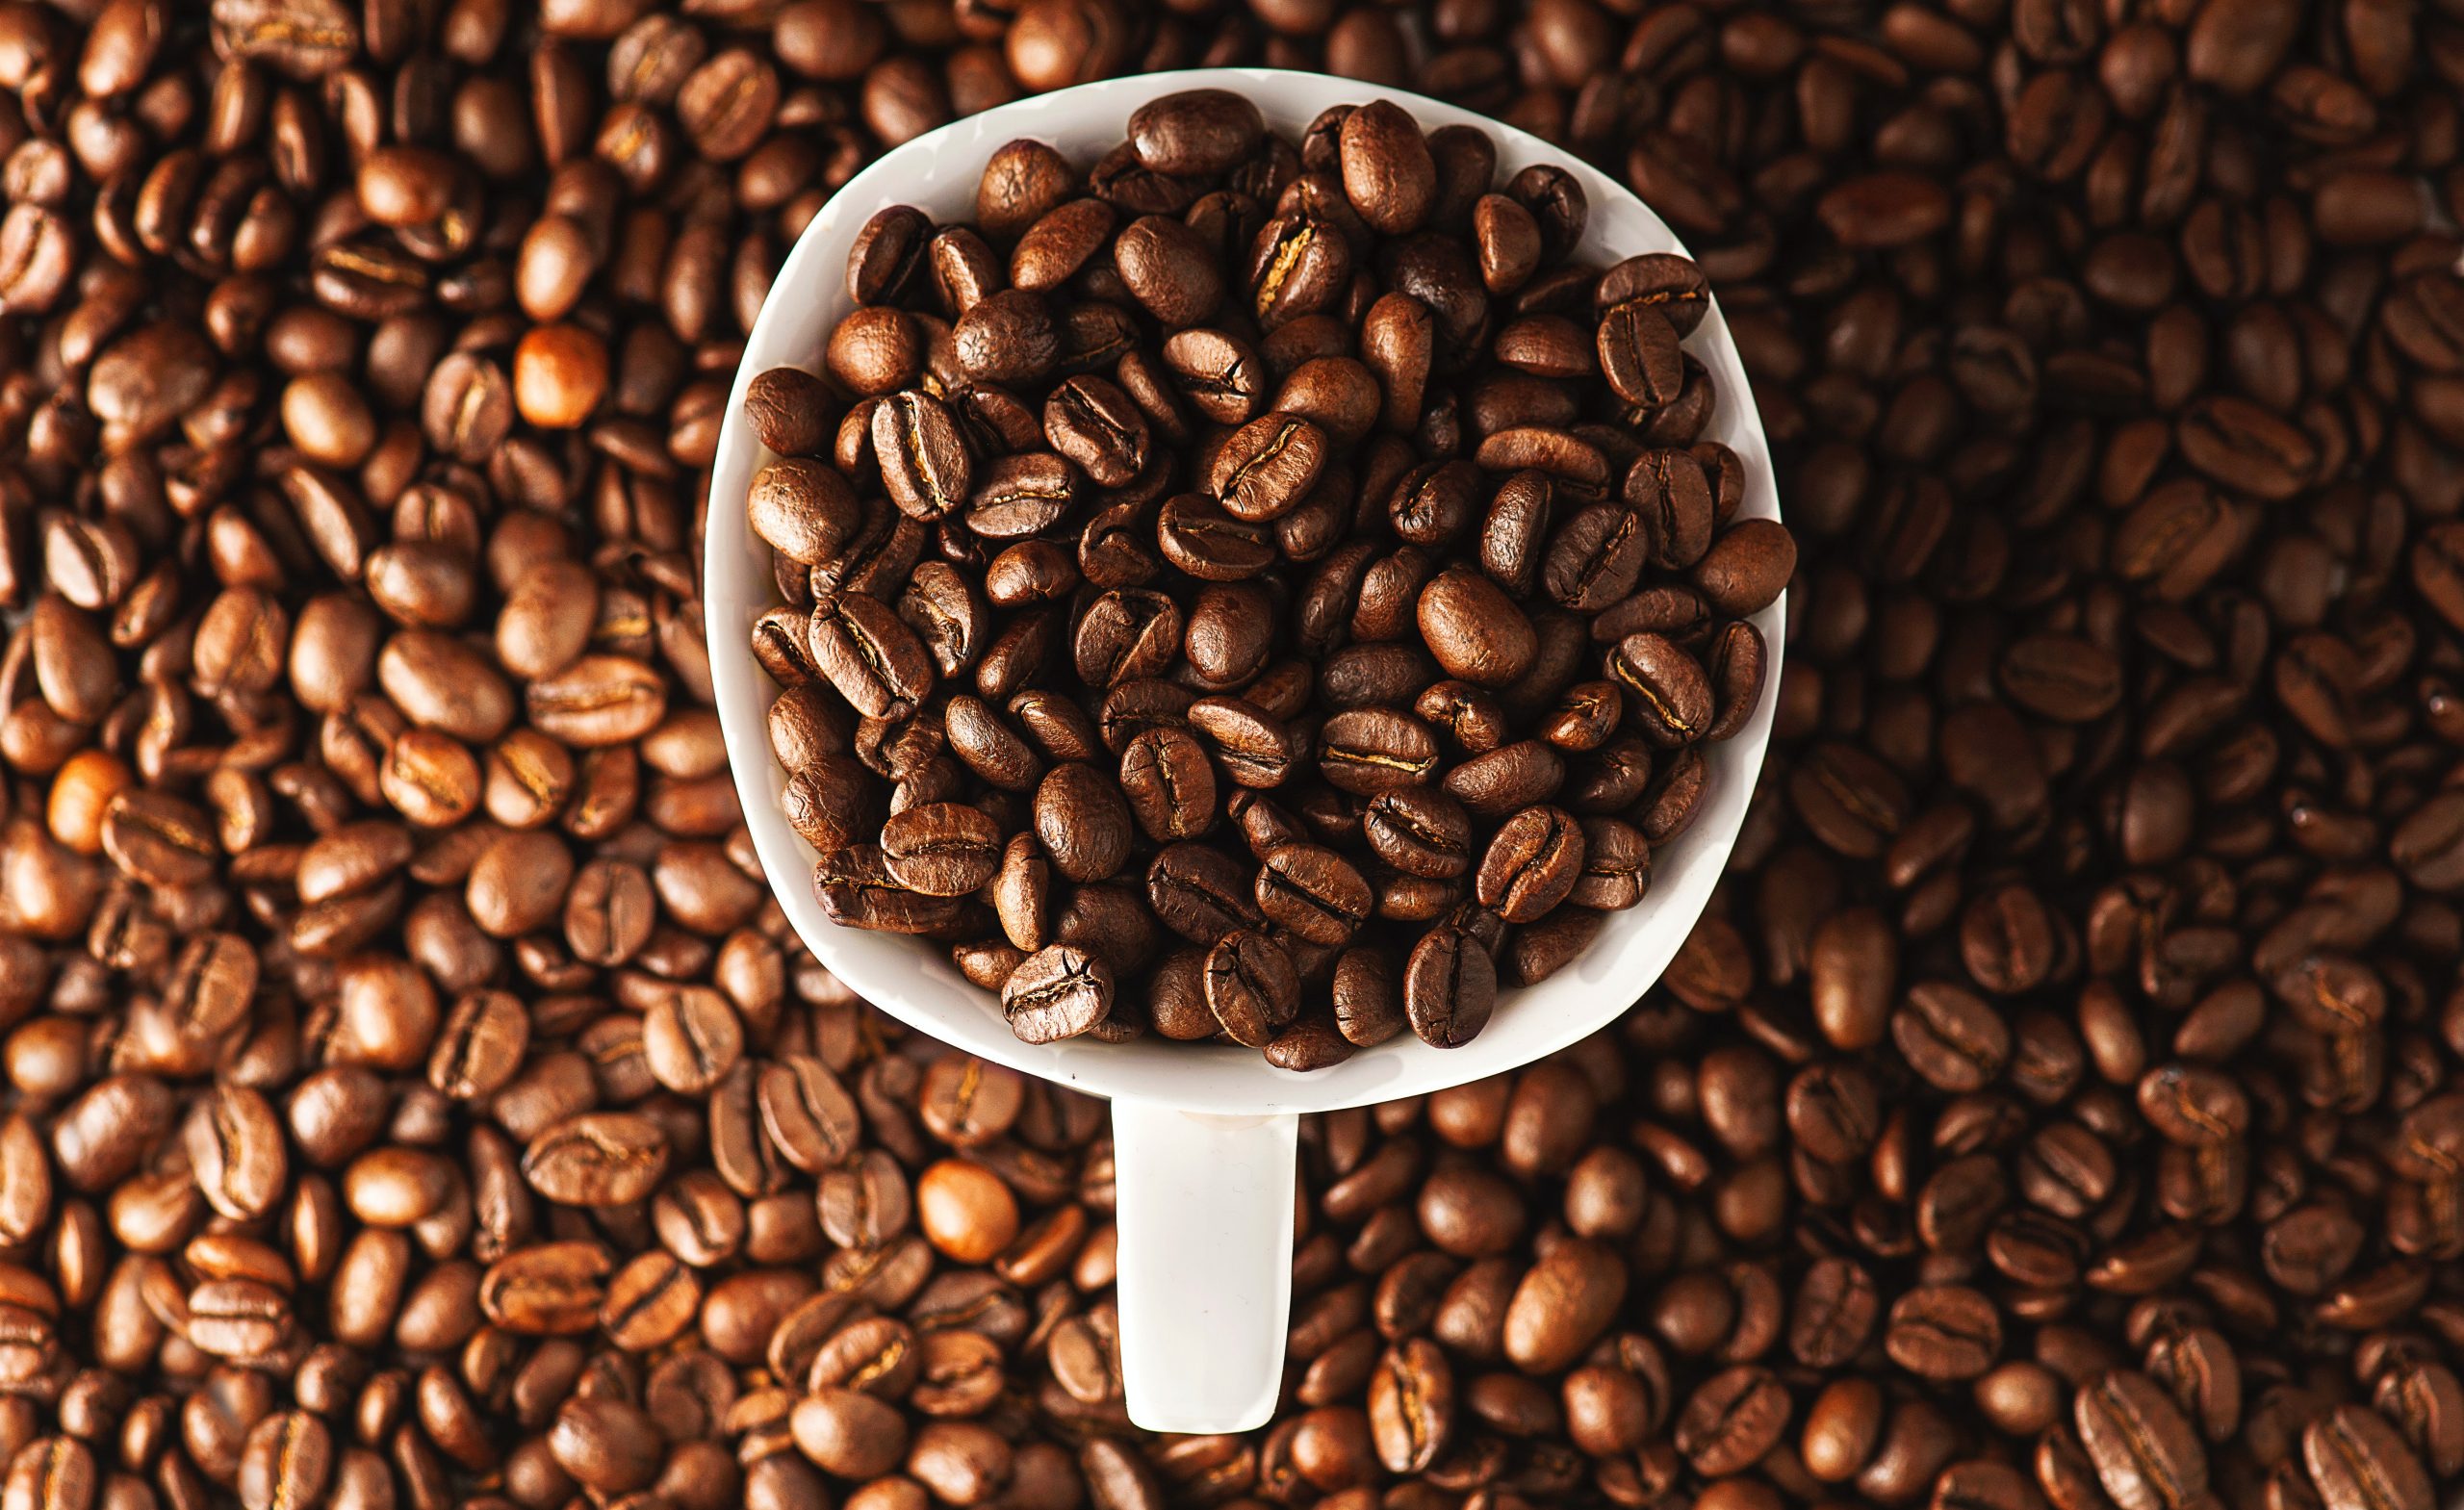 Café arábica es una de las variedades de café más conocidas del mundo.